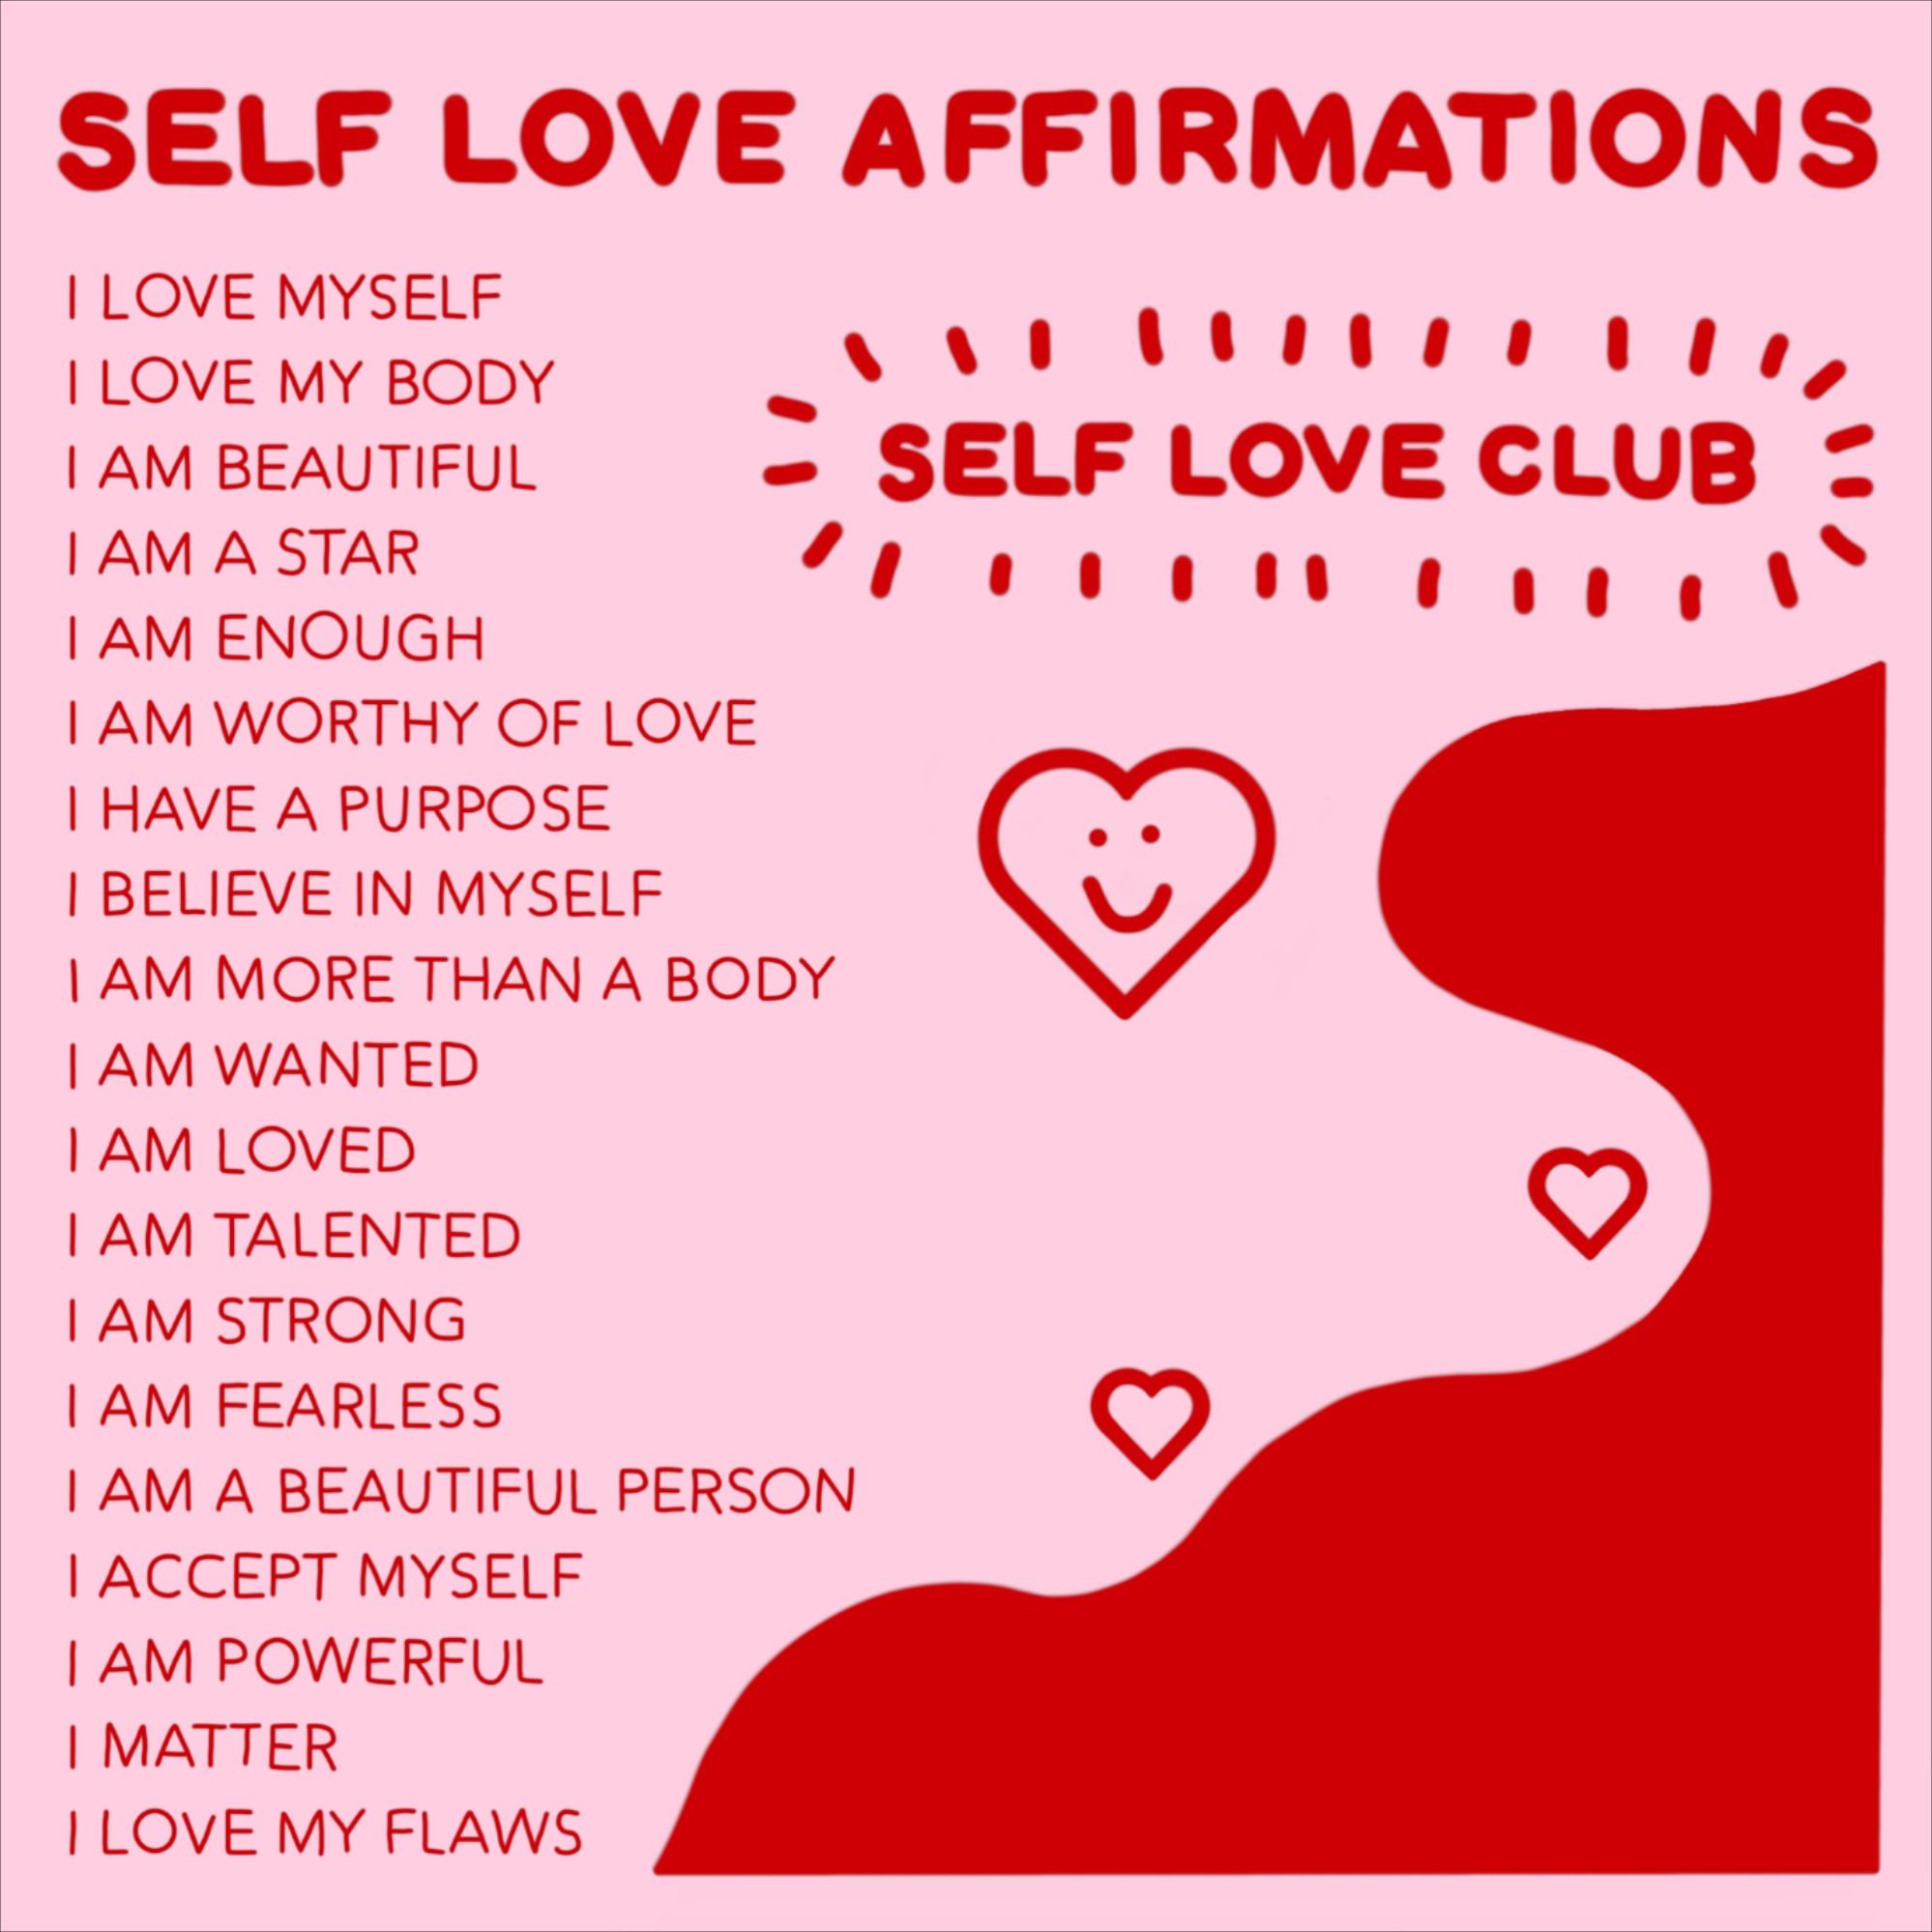 Self love affirmations chart